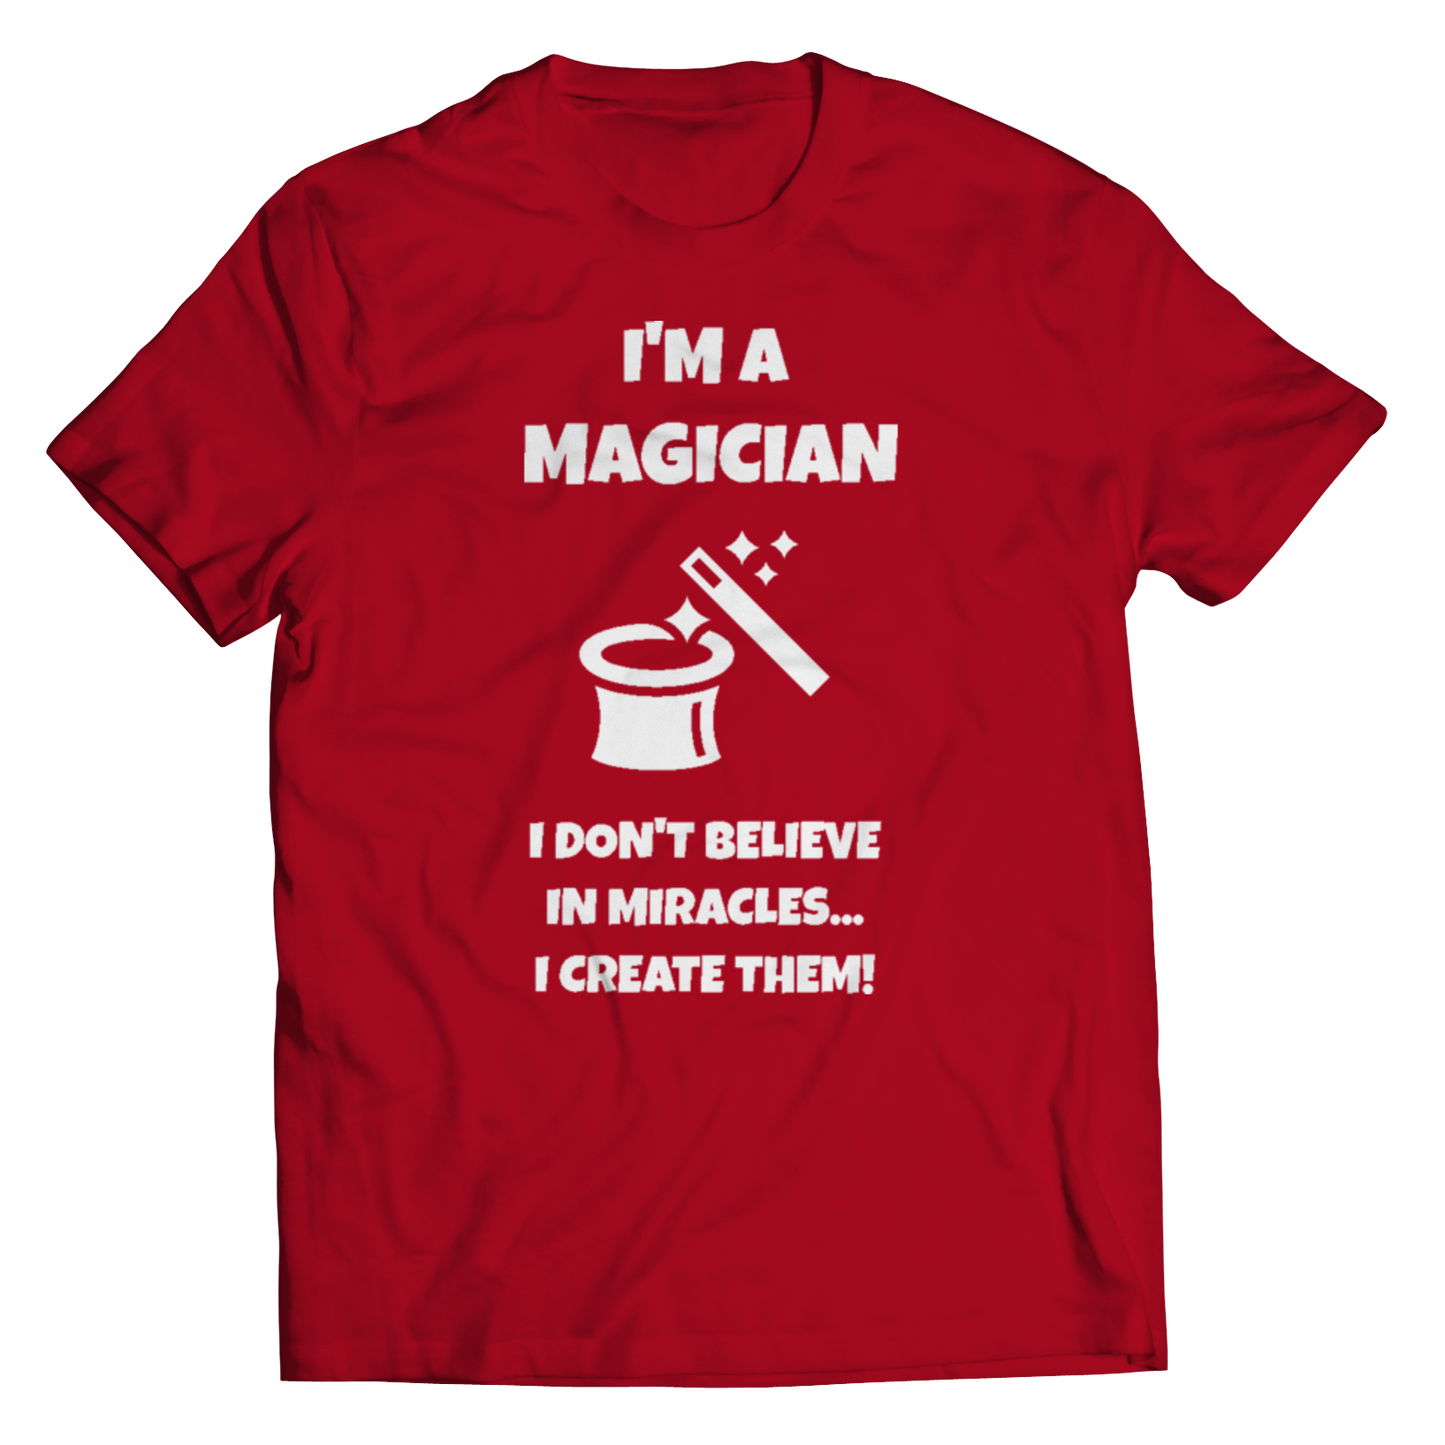 I'm A Magician Shirt Unisex T-Shirt